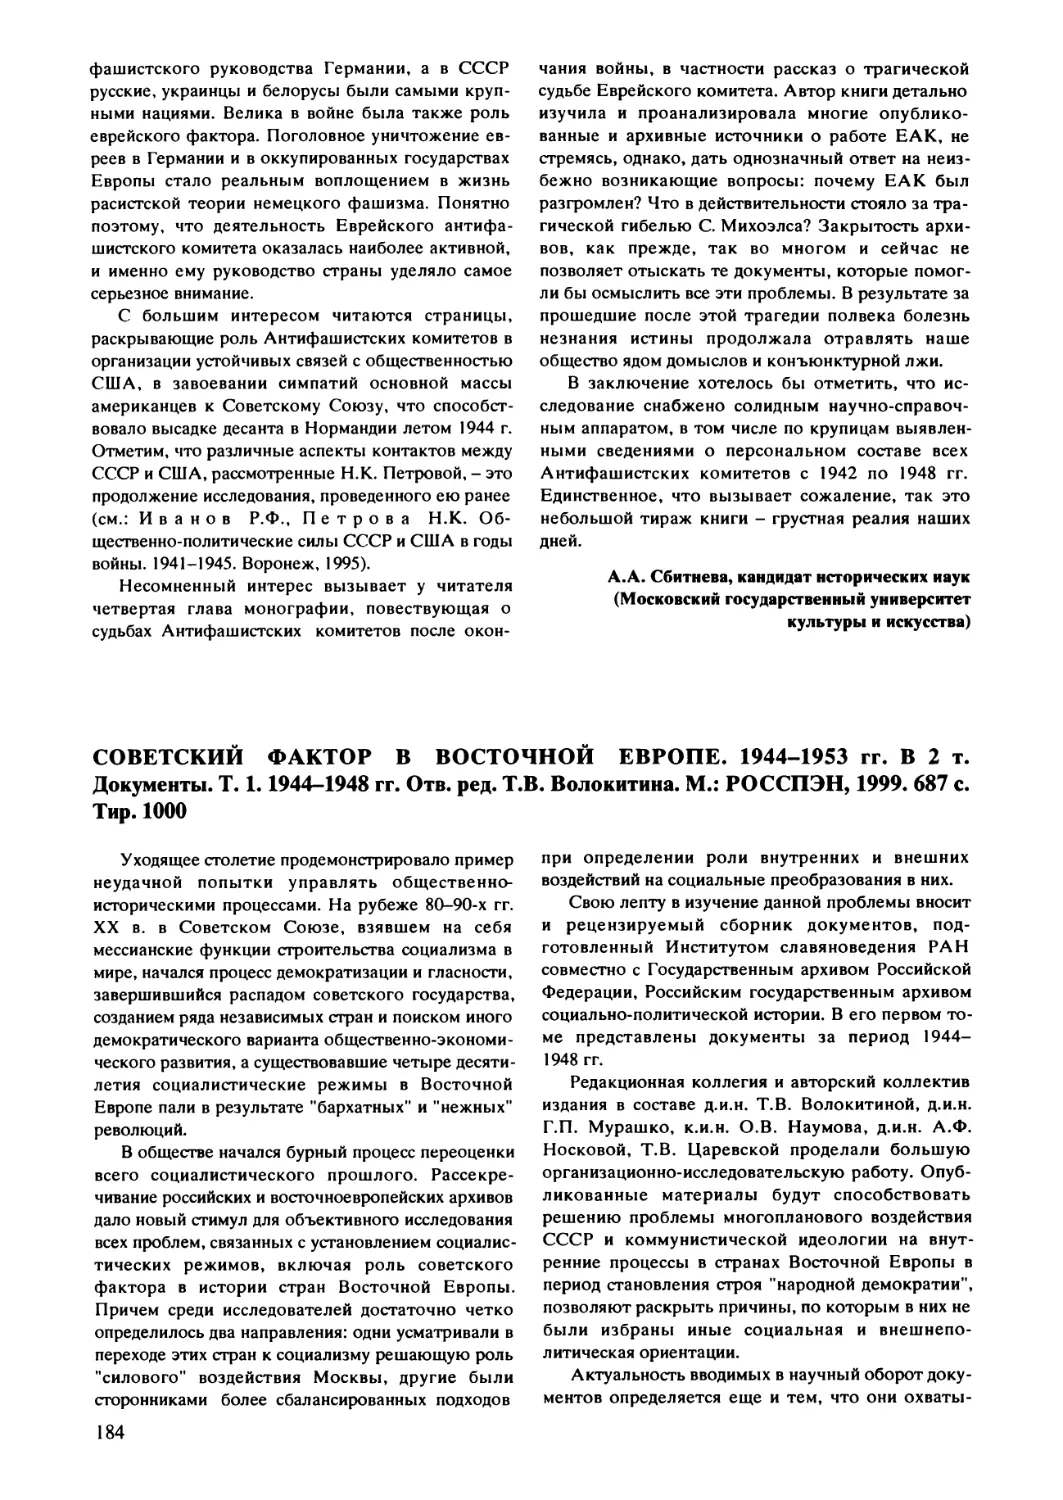 Васильева Н.В. - Советский фактор в Восточной Европе. Документы. T. 1. 1944-1948 гг